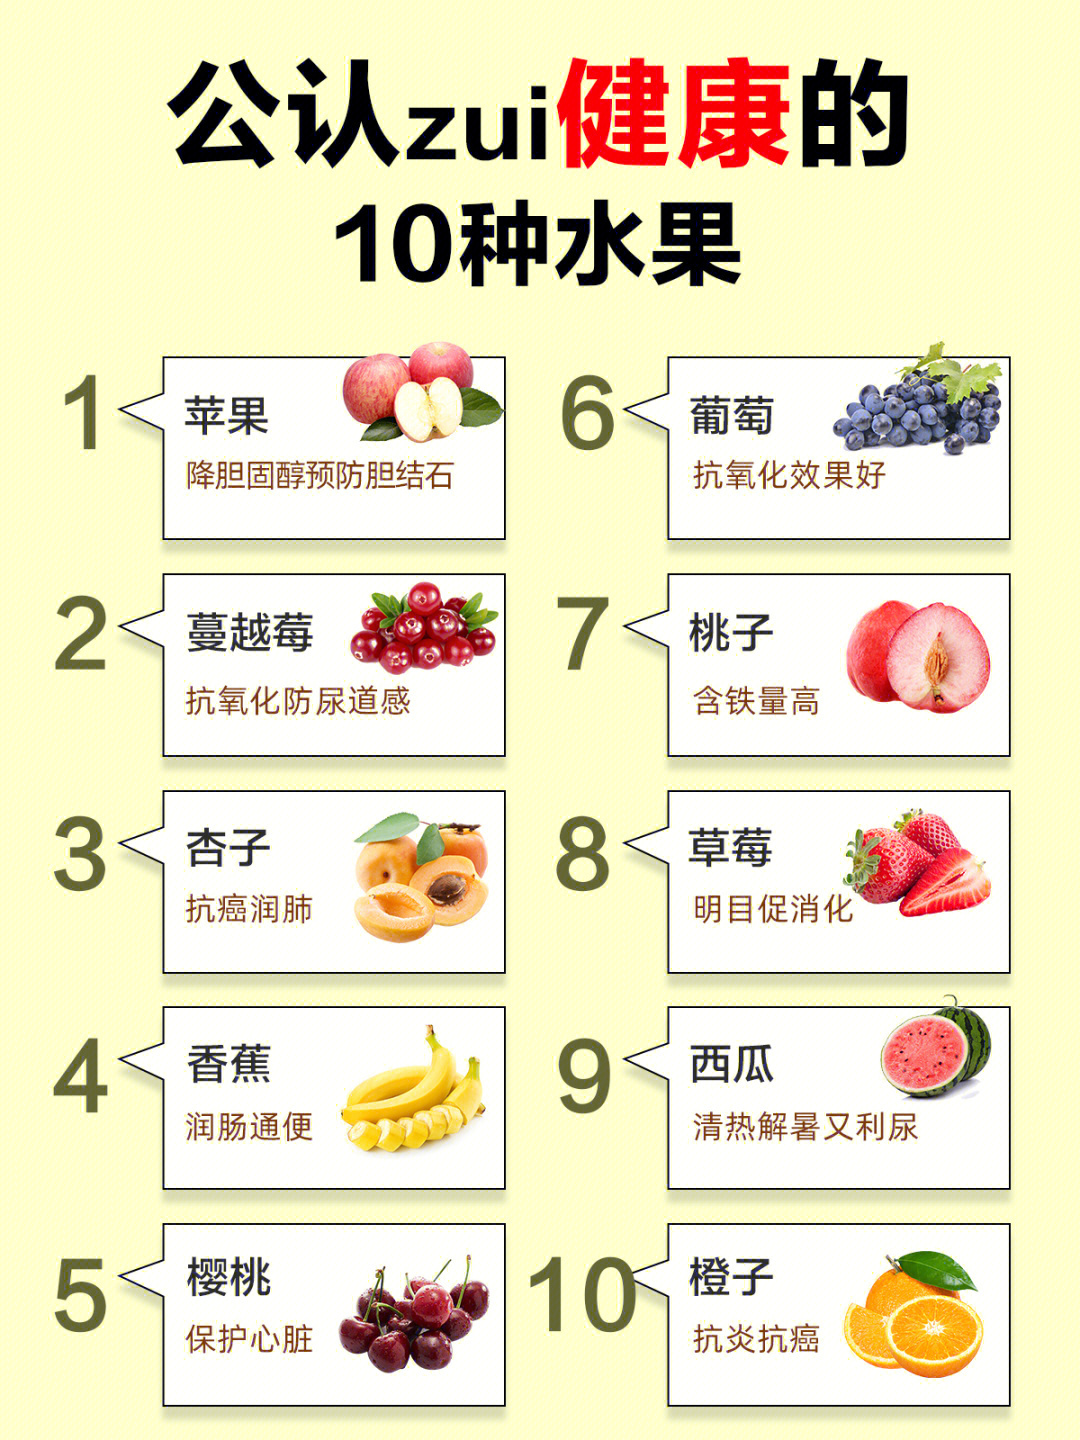 每天都吃水果,你知道这些水果都有什么功效和营养价值吗?